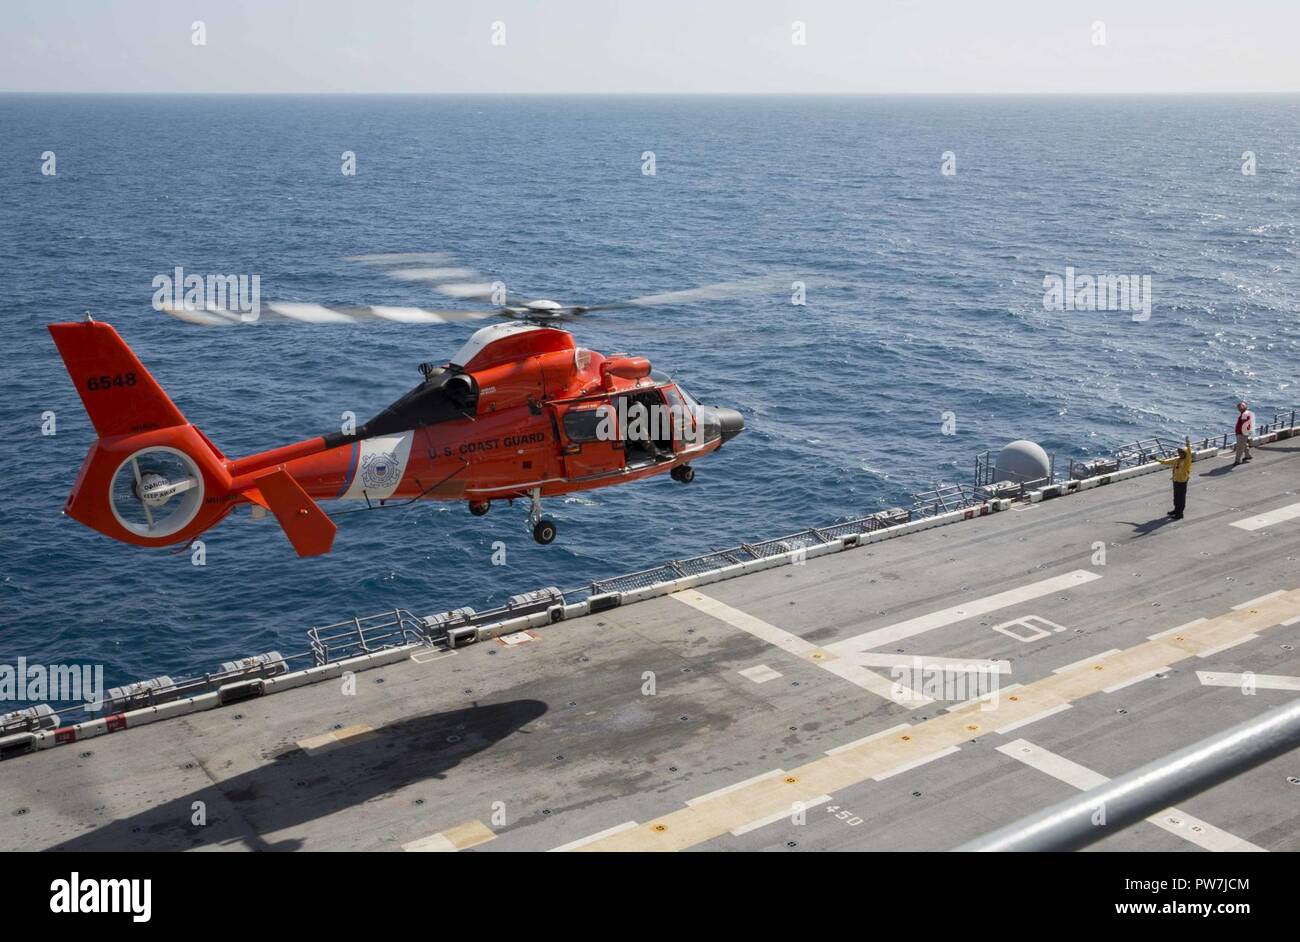 Mar dei Caraibi (sett. 24, 2017) un U.S. Coast Guard MH-60 Delfino elicottero decolla dopo il rifornimento di carburante sul ponte di volo a bordo di un assalto anfibio nave USS Kearsarge (LHD 3). Kearsarge è assistere con i soccorsi dopo il passaggio dell uragano Maria. Il Dipartimento della difesa è di sostenere la Federal Emergency Management Agency, il piombo agenzia federale per aiutare coloro che sono stati colpiti dall uragano Maria per ridurre al minimo la sofferenza ed è un componente del complessivo intero-di-risposta del governo sforzo. Foto Stock